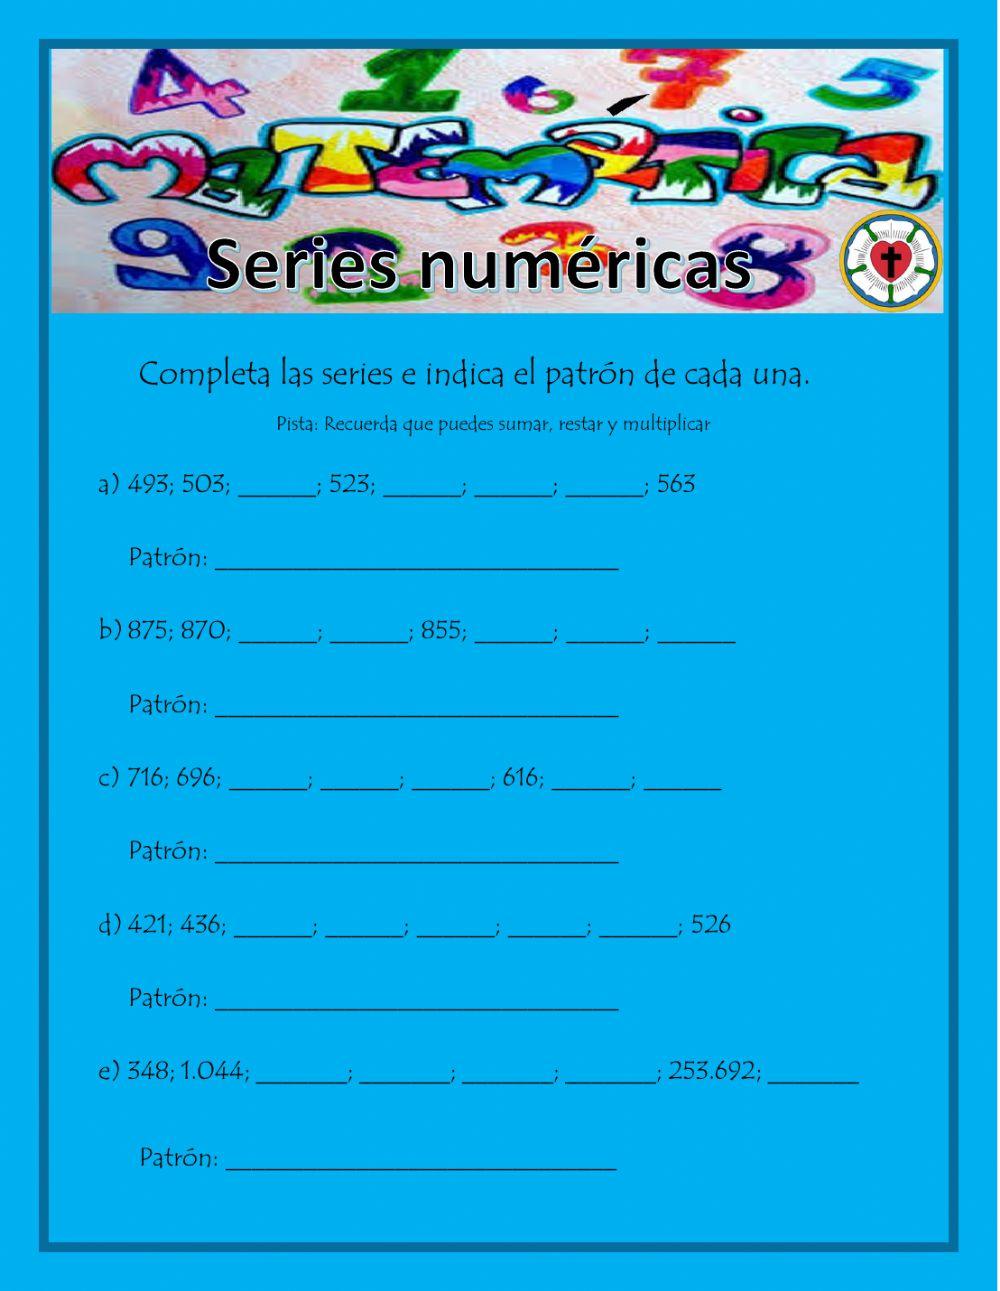 Series numéricas